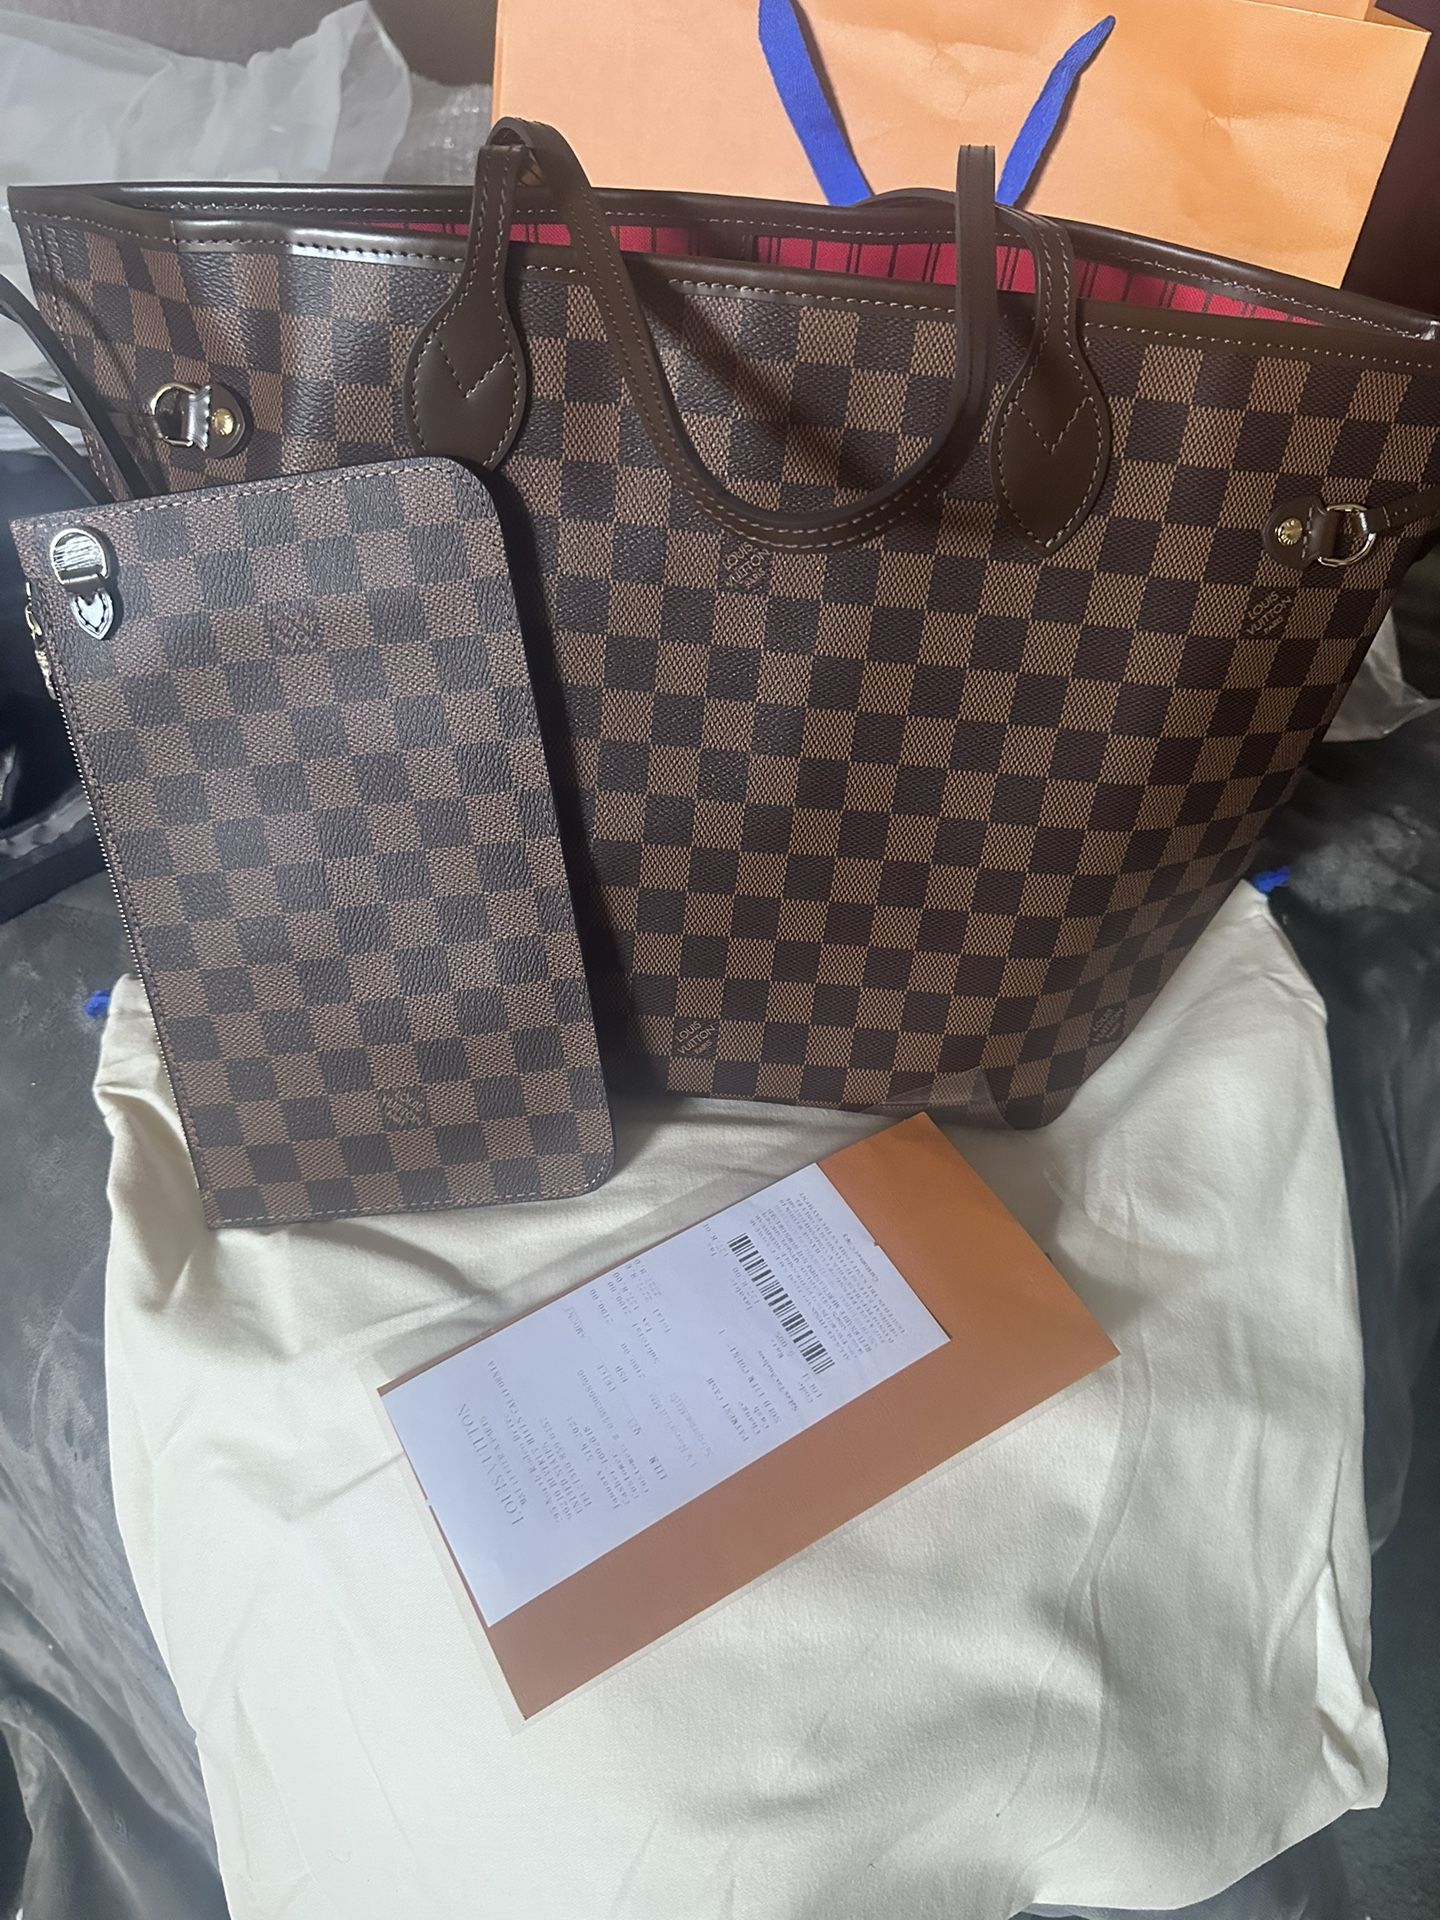 New Louis Vuitton Neverfull Bag MM